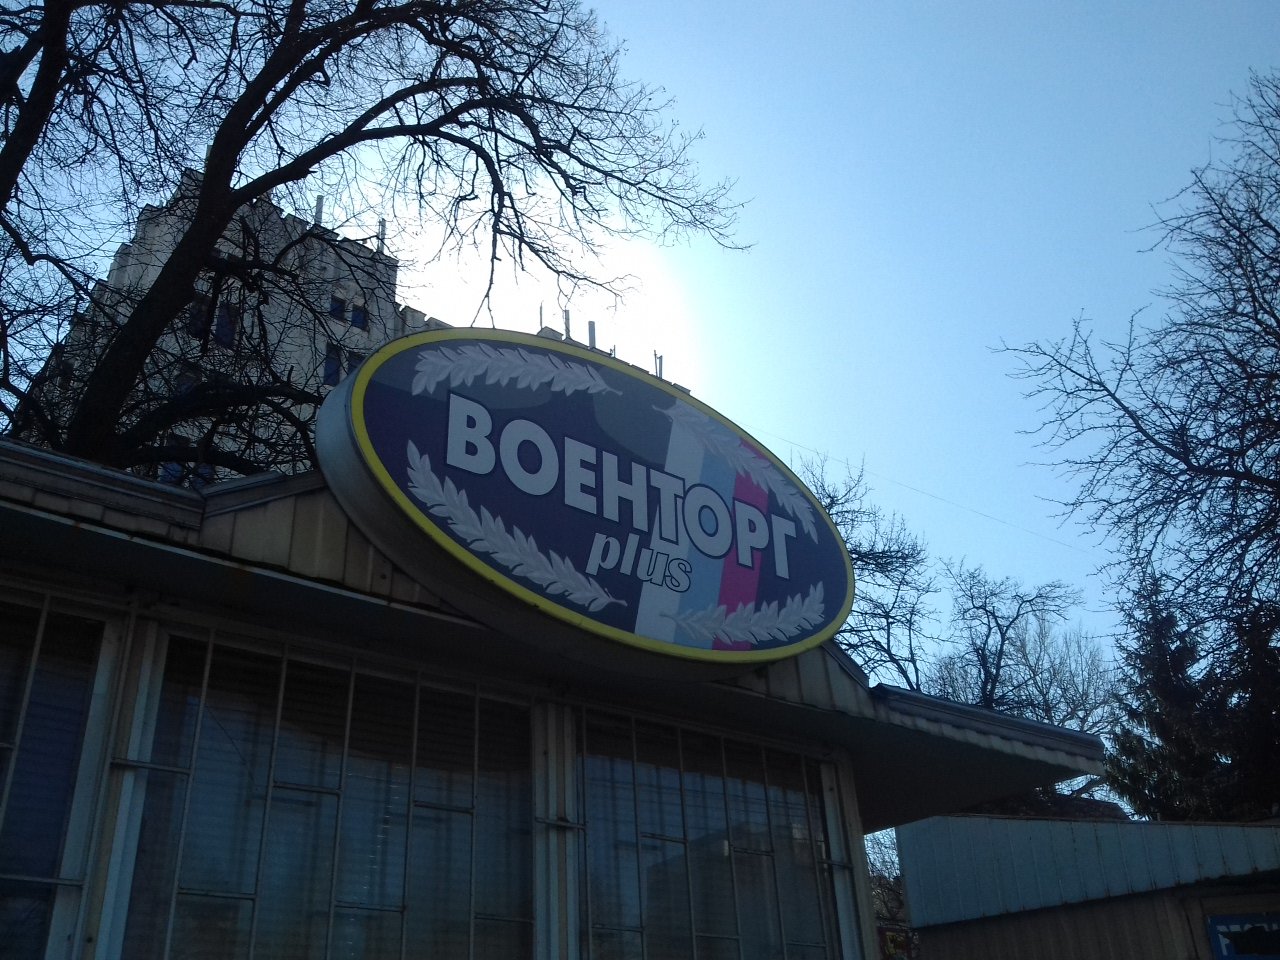 Армейский магазин "Военторг Plus" на Дзержинского в Курске